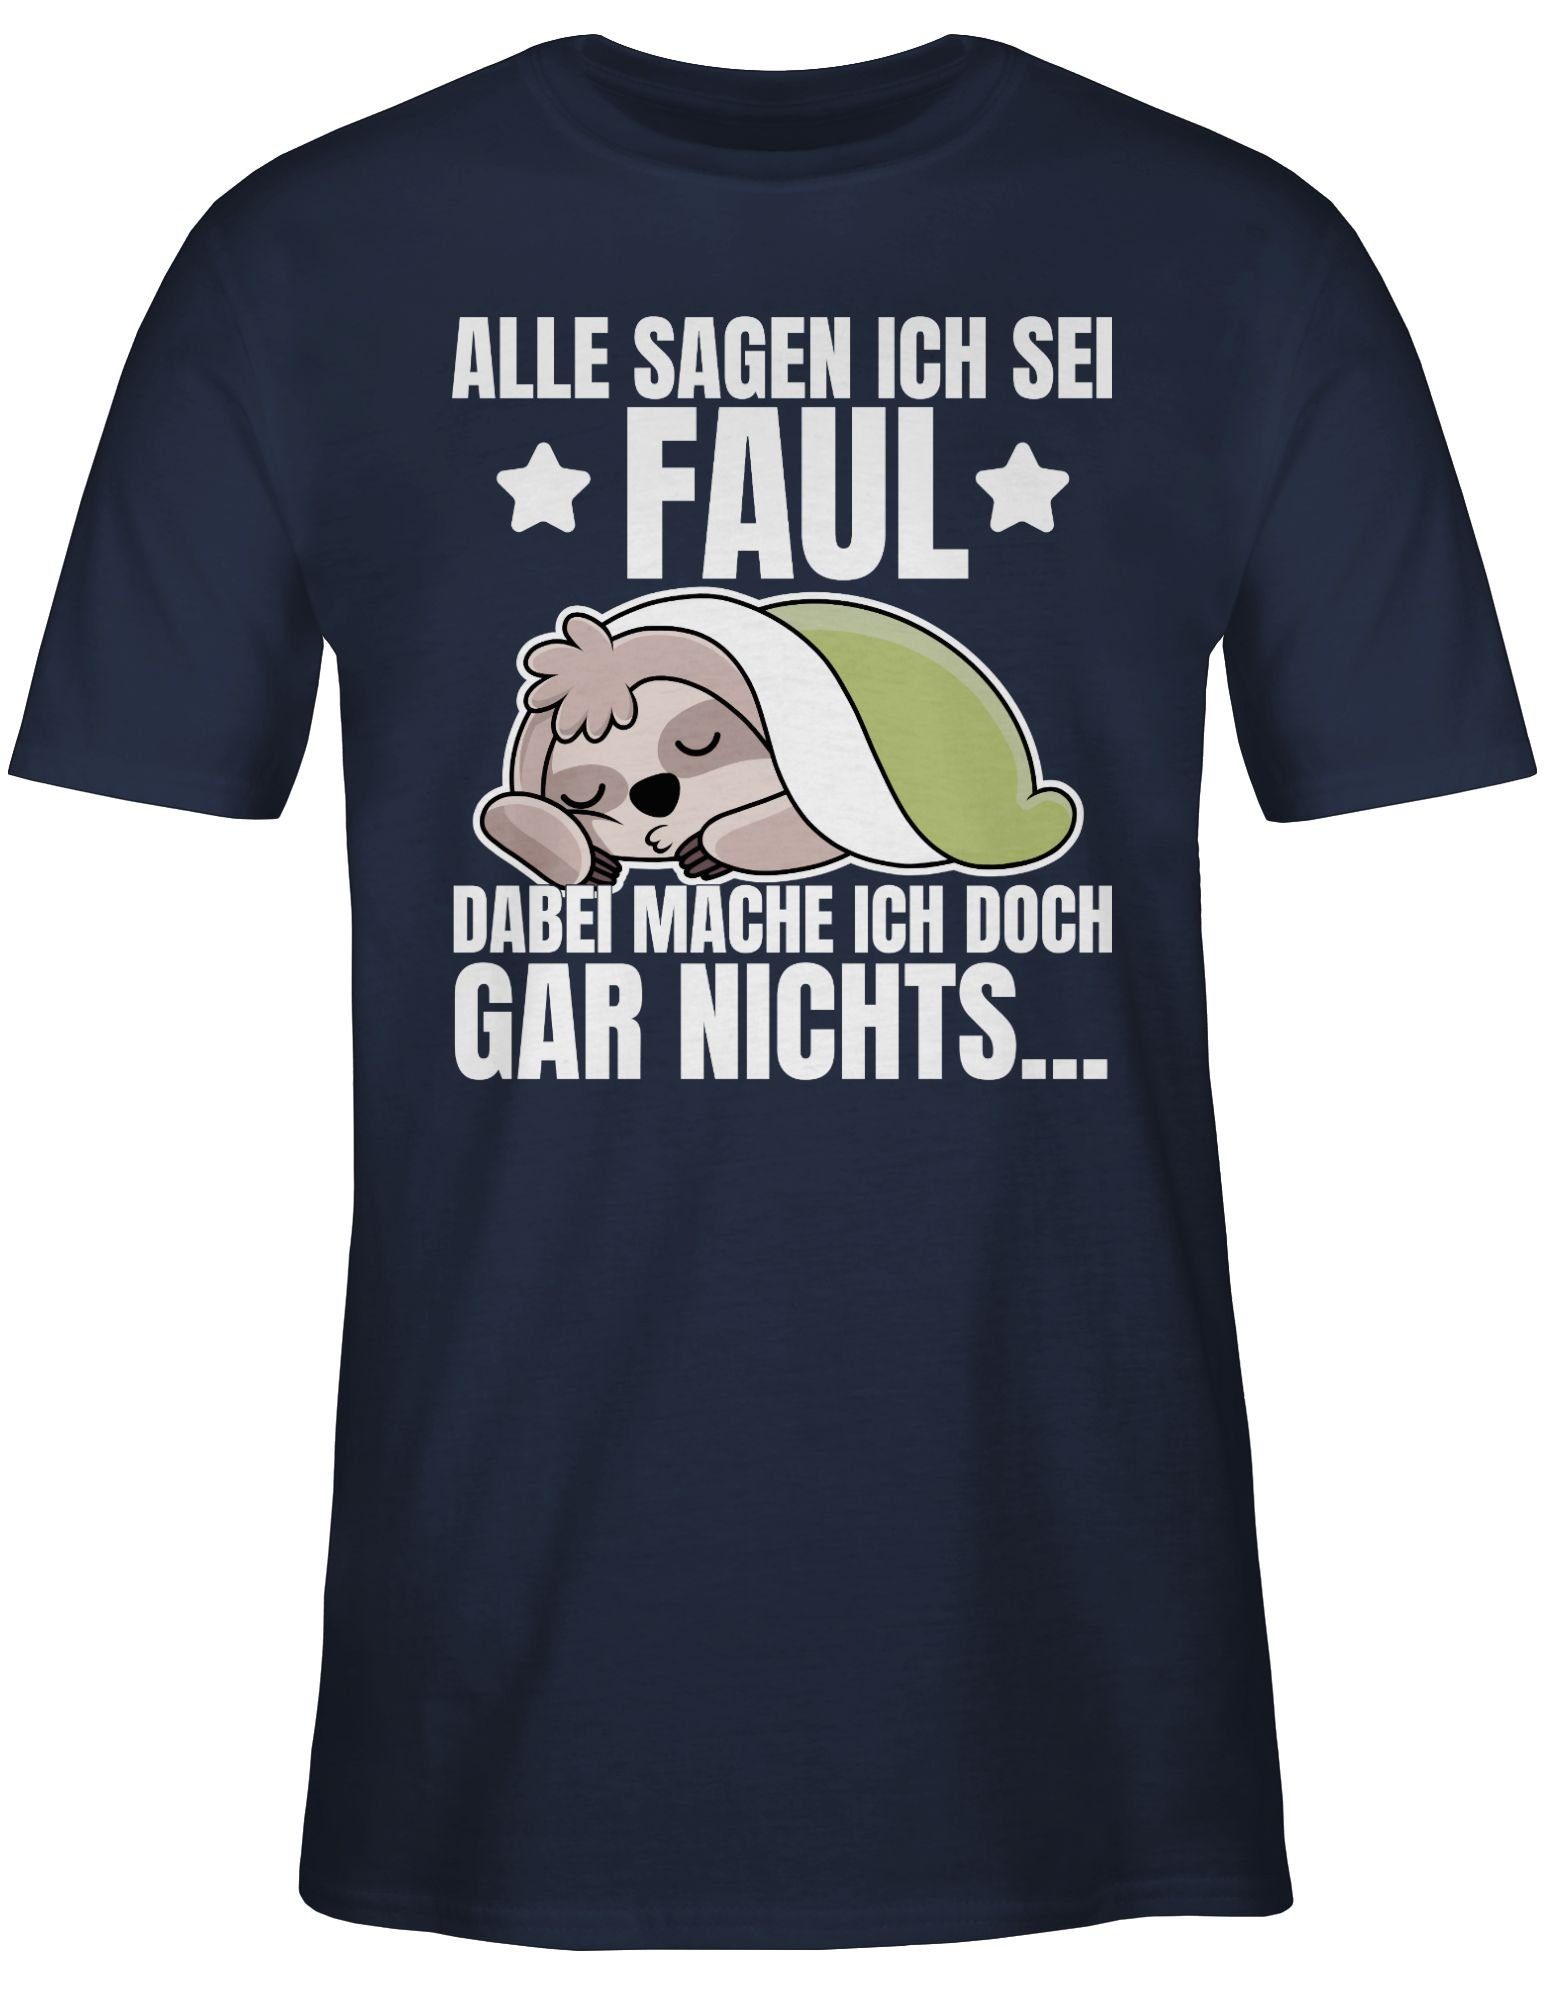 Shirtracer T-Shirt Alle sagen ich Blau sei Spruch 02 Statement Sprüche Navy mit Faultier - Faul